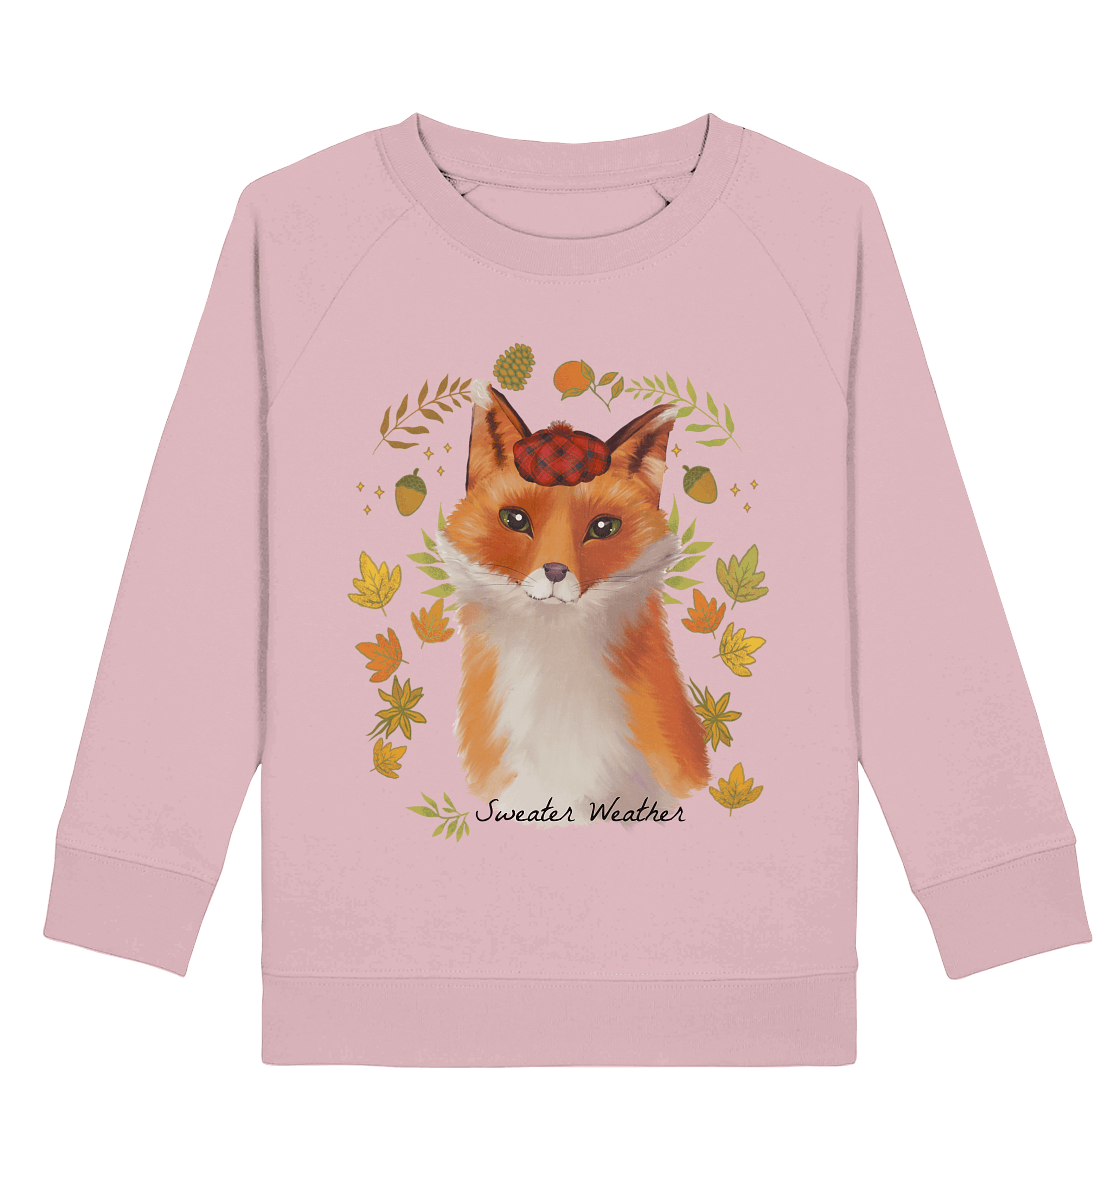 Fuchs im Herbst Kinder Sweatshirt in rosa mit Fuchs Print sweater weather von BLOOMINIC